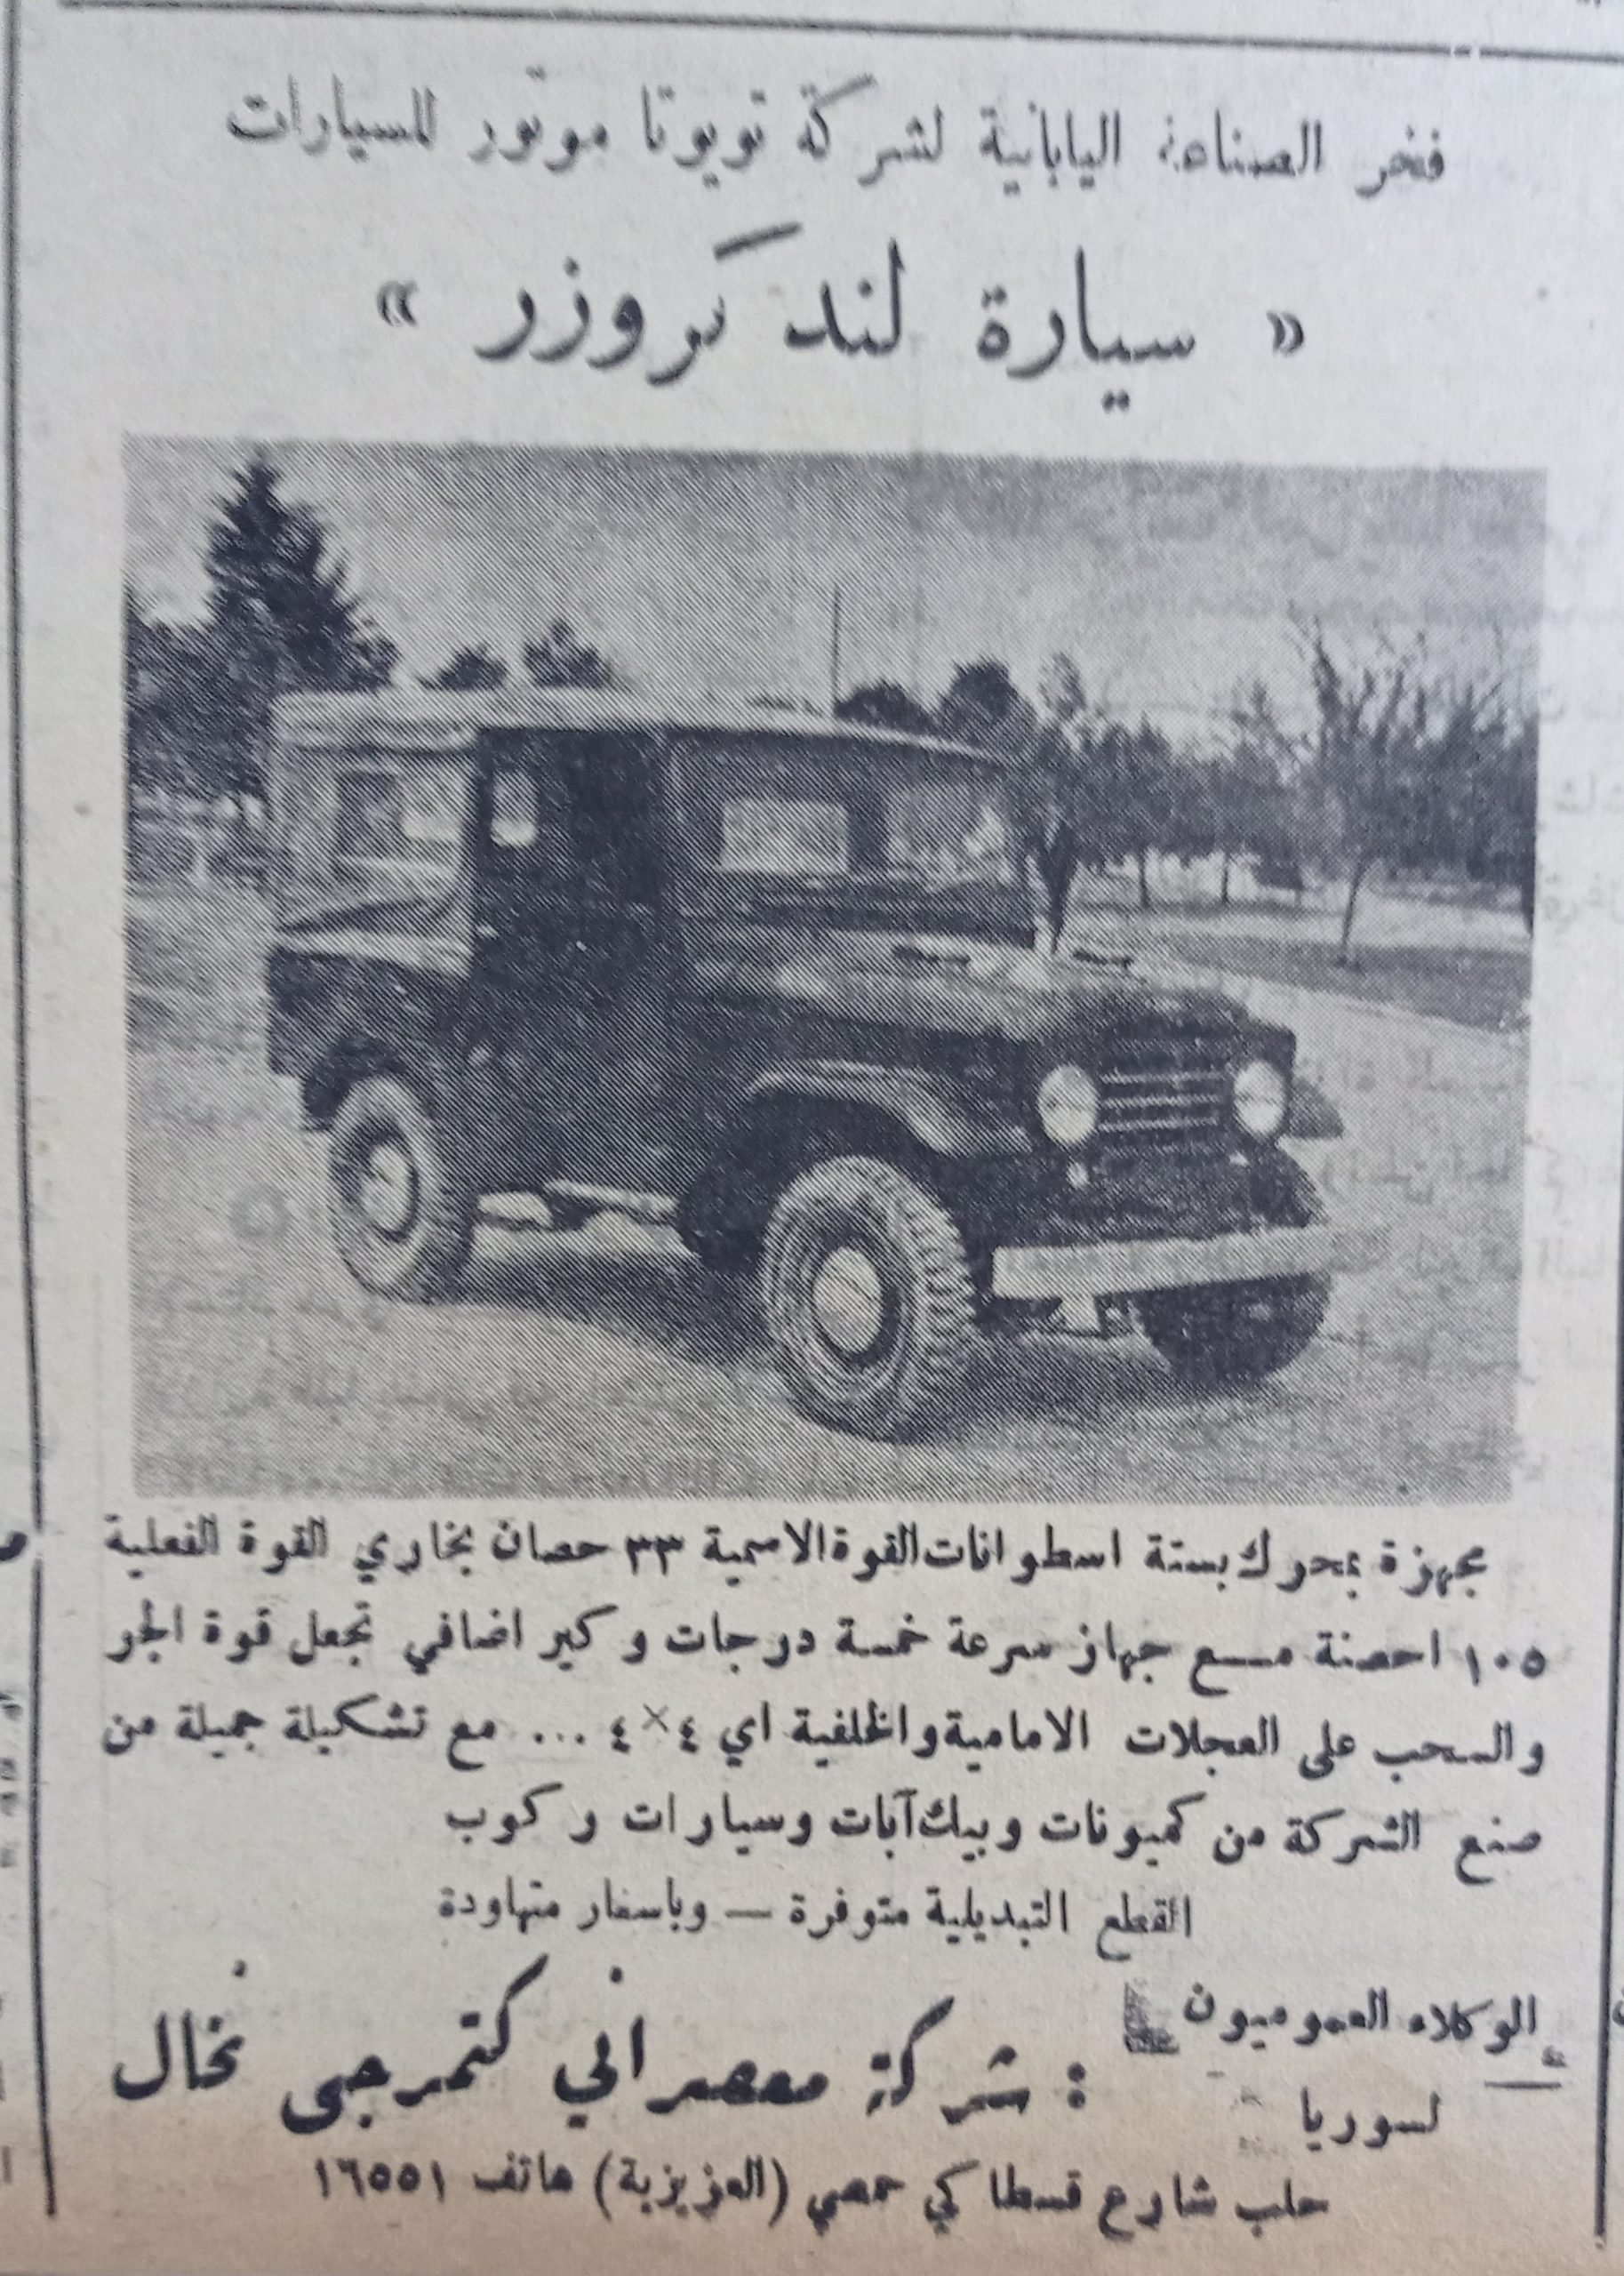 إعلان عن سيارات (لند كروزر) اليابانية و وكلائها في سورية عام 1956